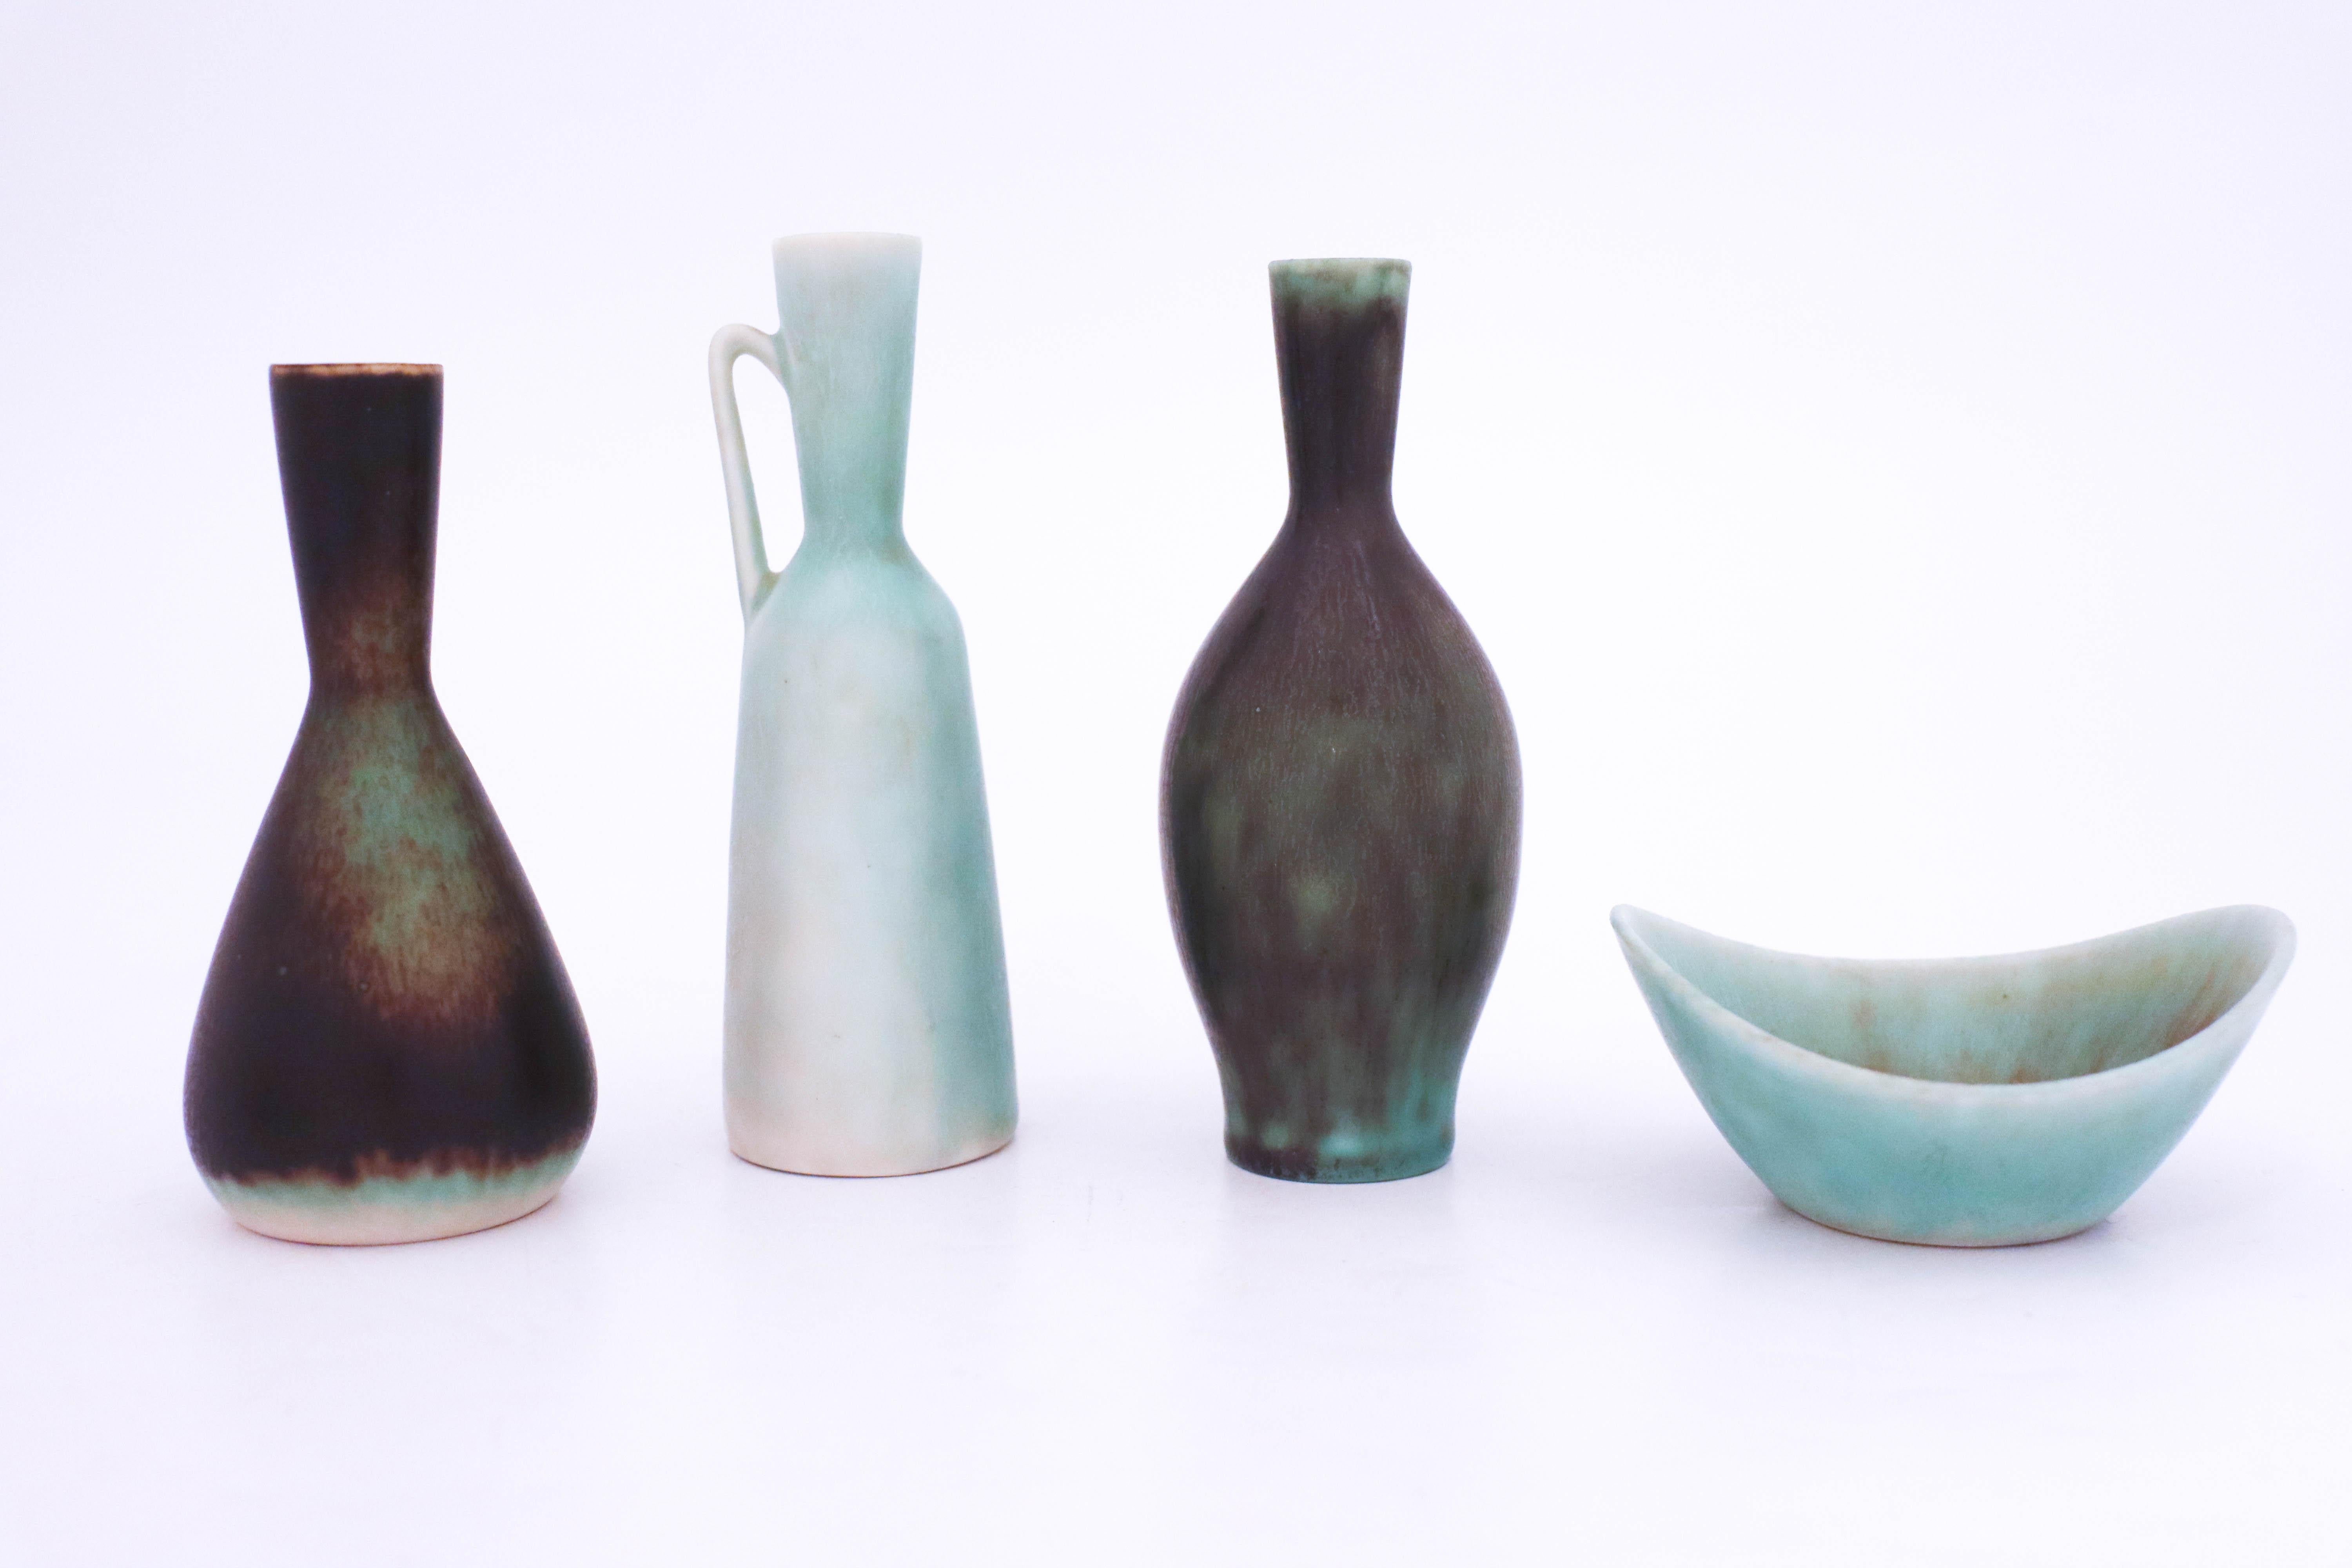 Scandinavian Modern Group of 4 Stoneware Vases, Carl-Harry Stålhane, Rörstrand, 1950s